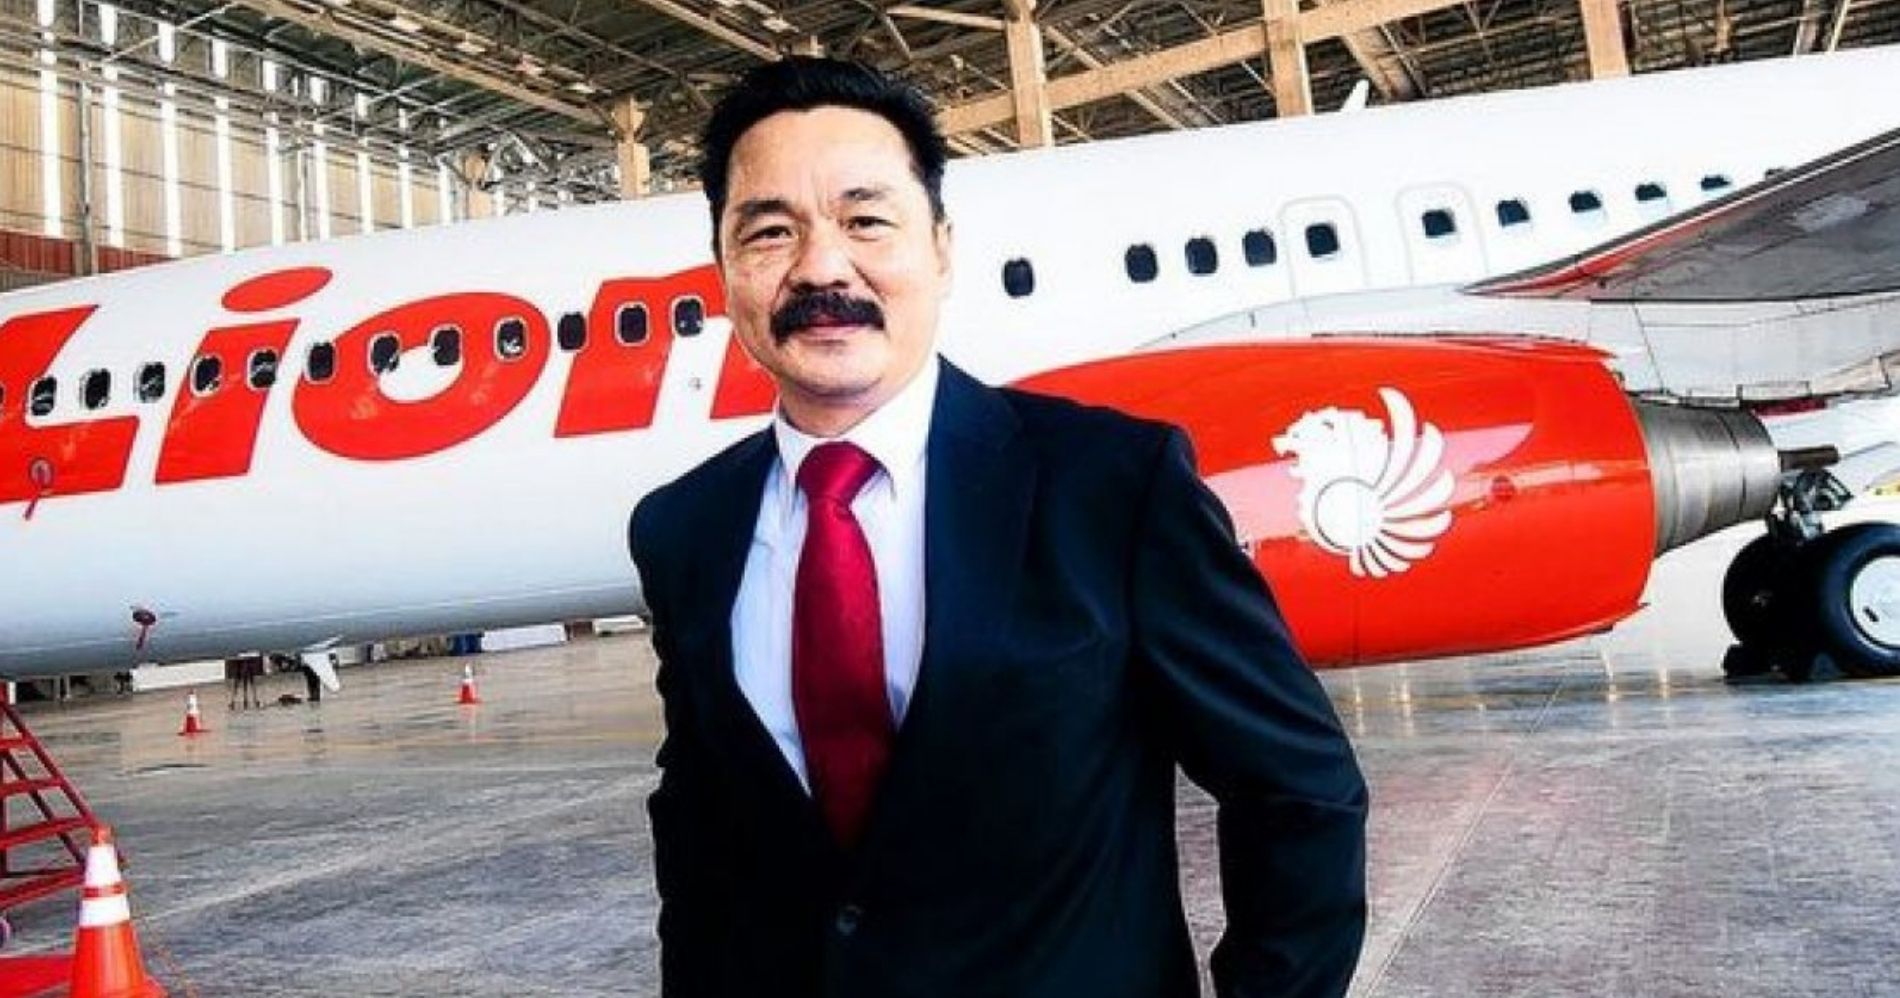 Rusdi Kirana Pemilik Lion Air Group yang Danai Super Air Jet Illustration Bisnis Muda - Pinterest